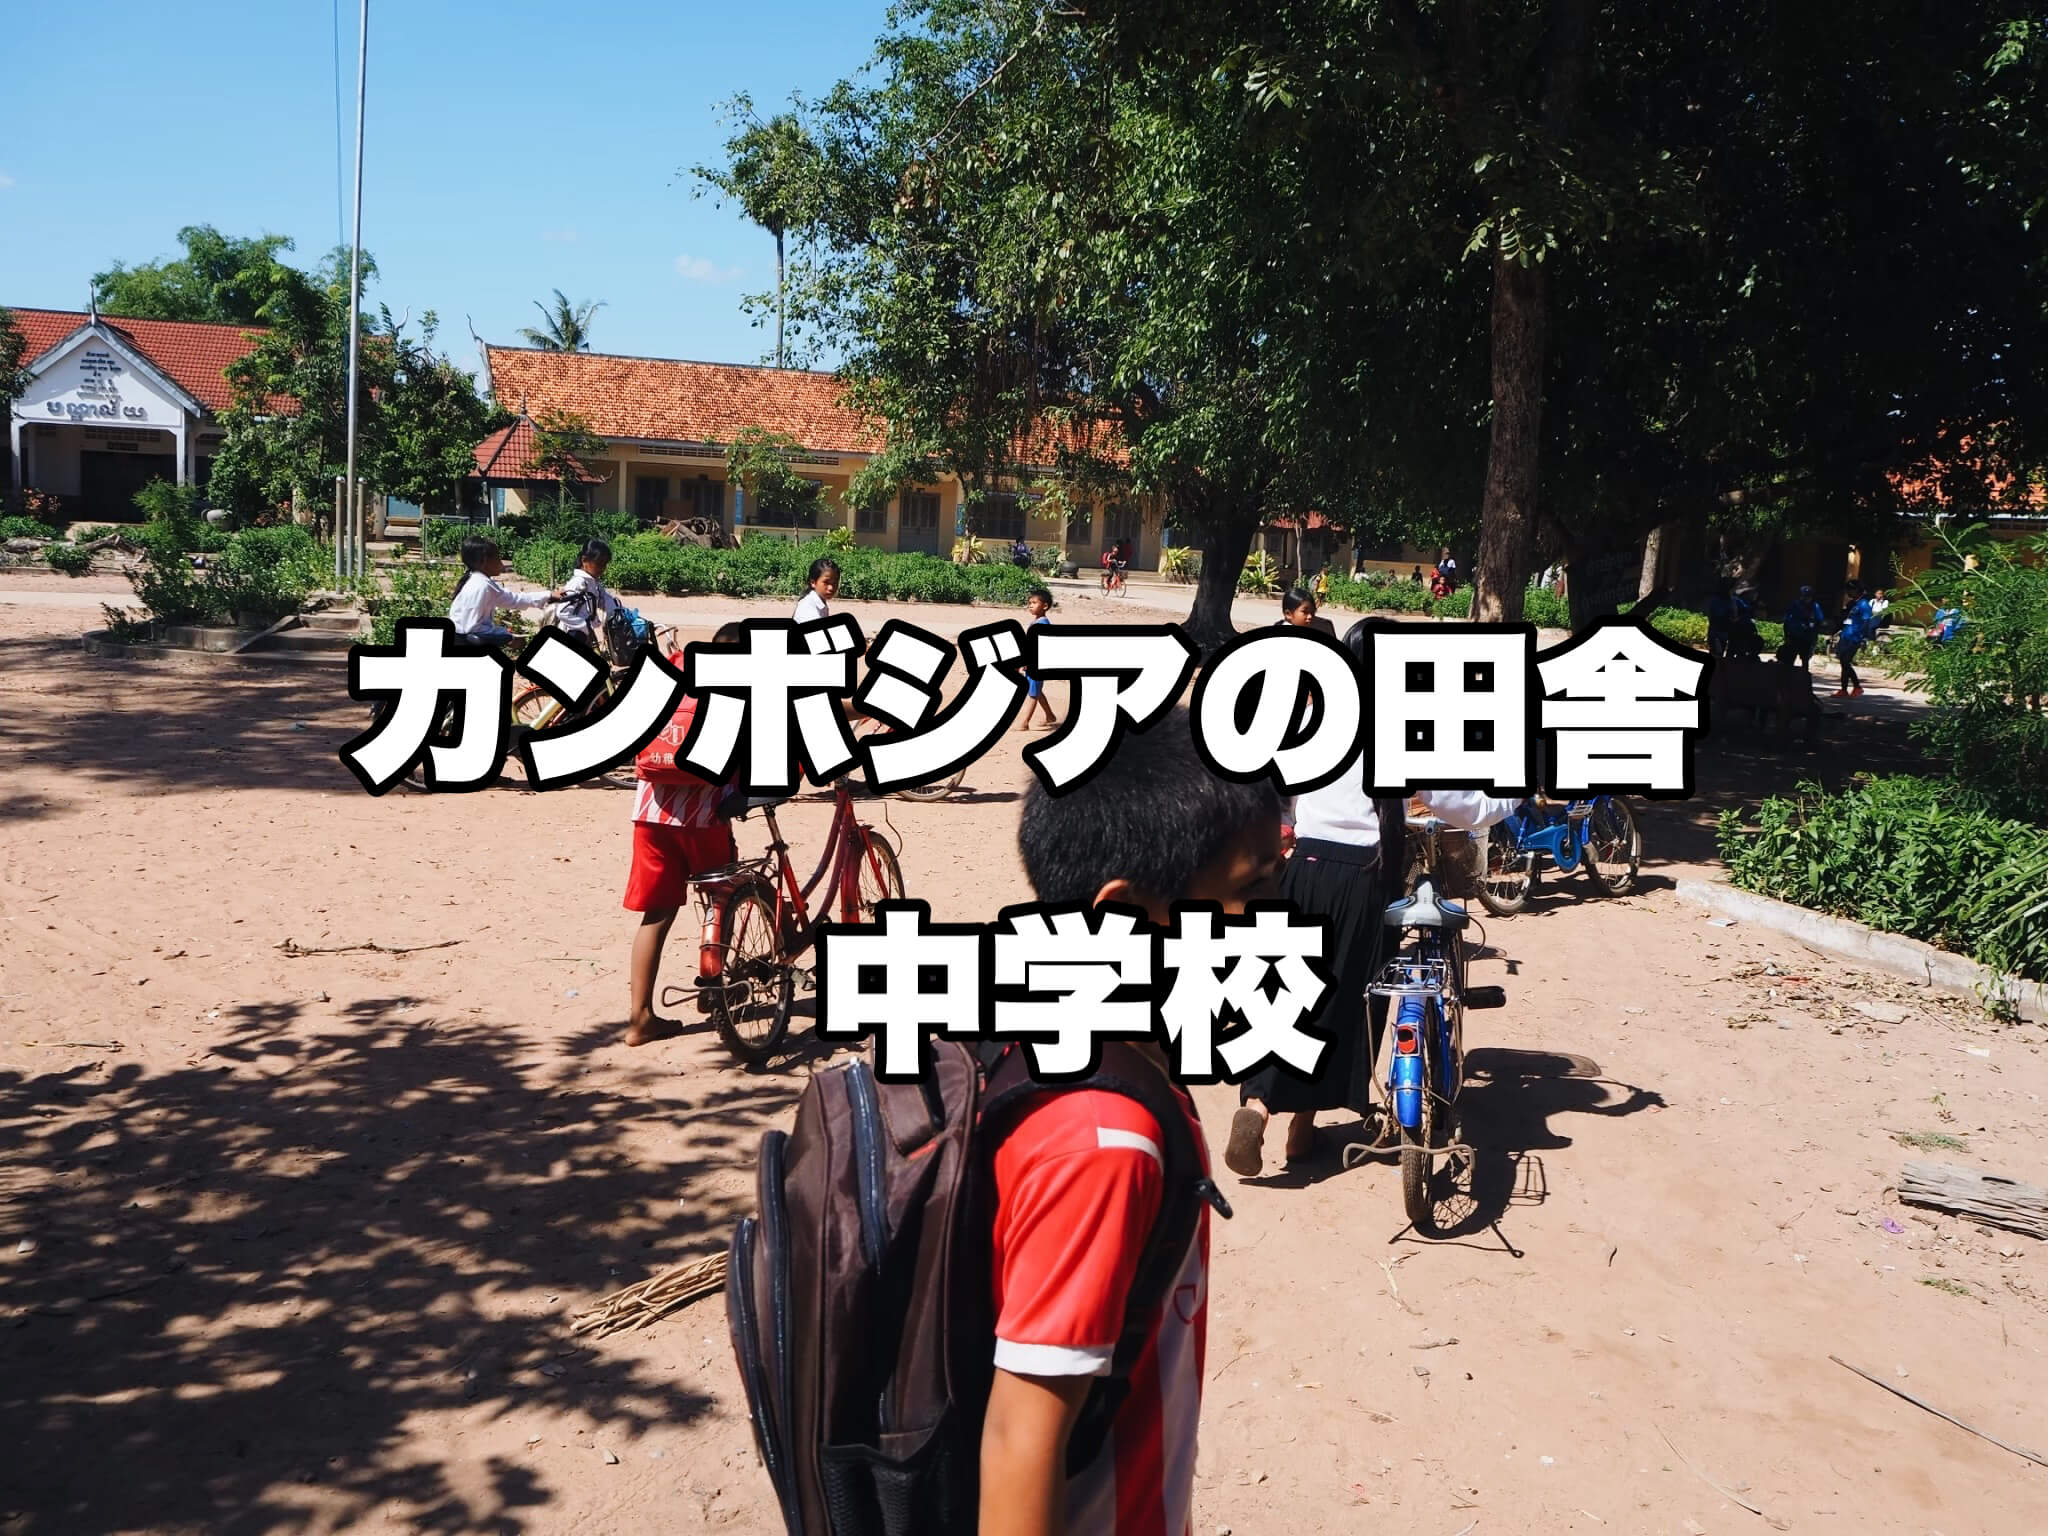 カンボジア中学生が自転車で登校